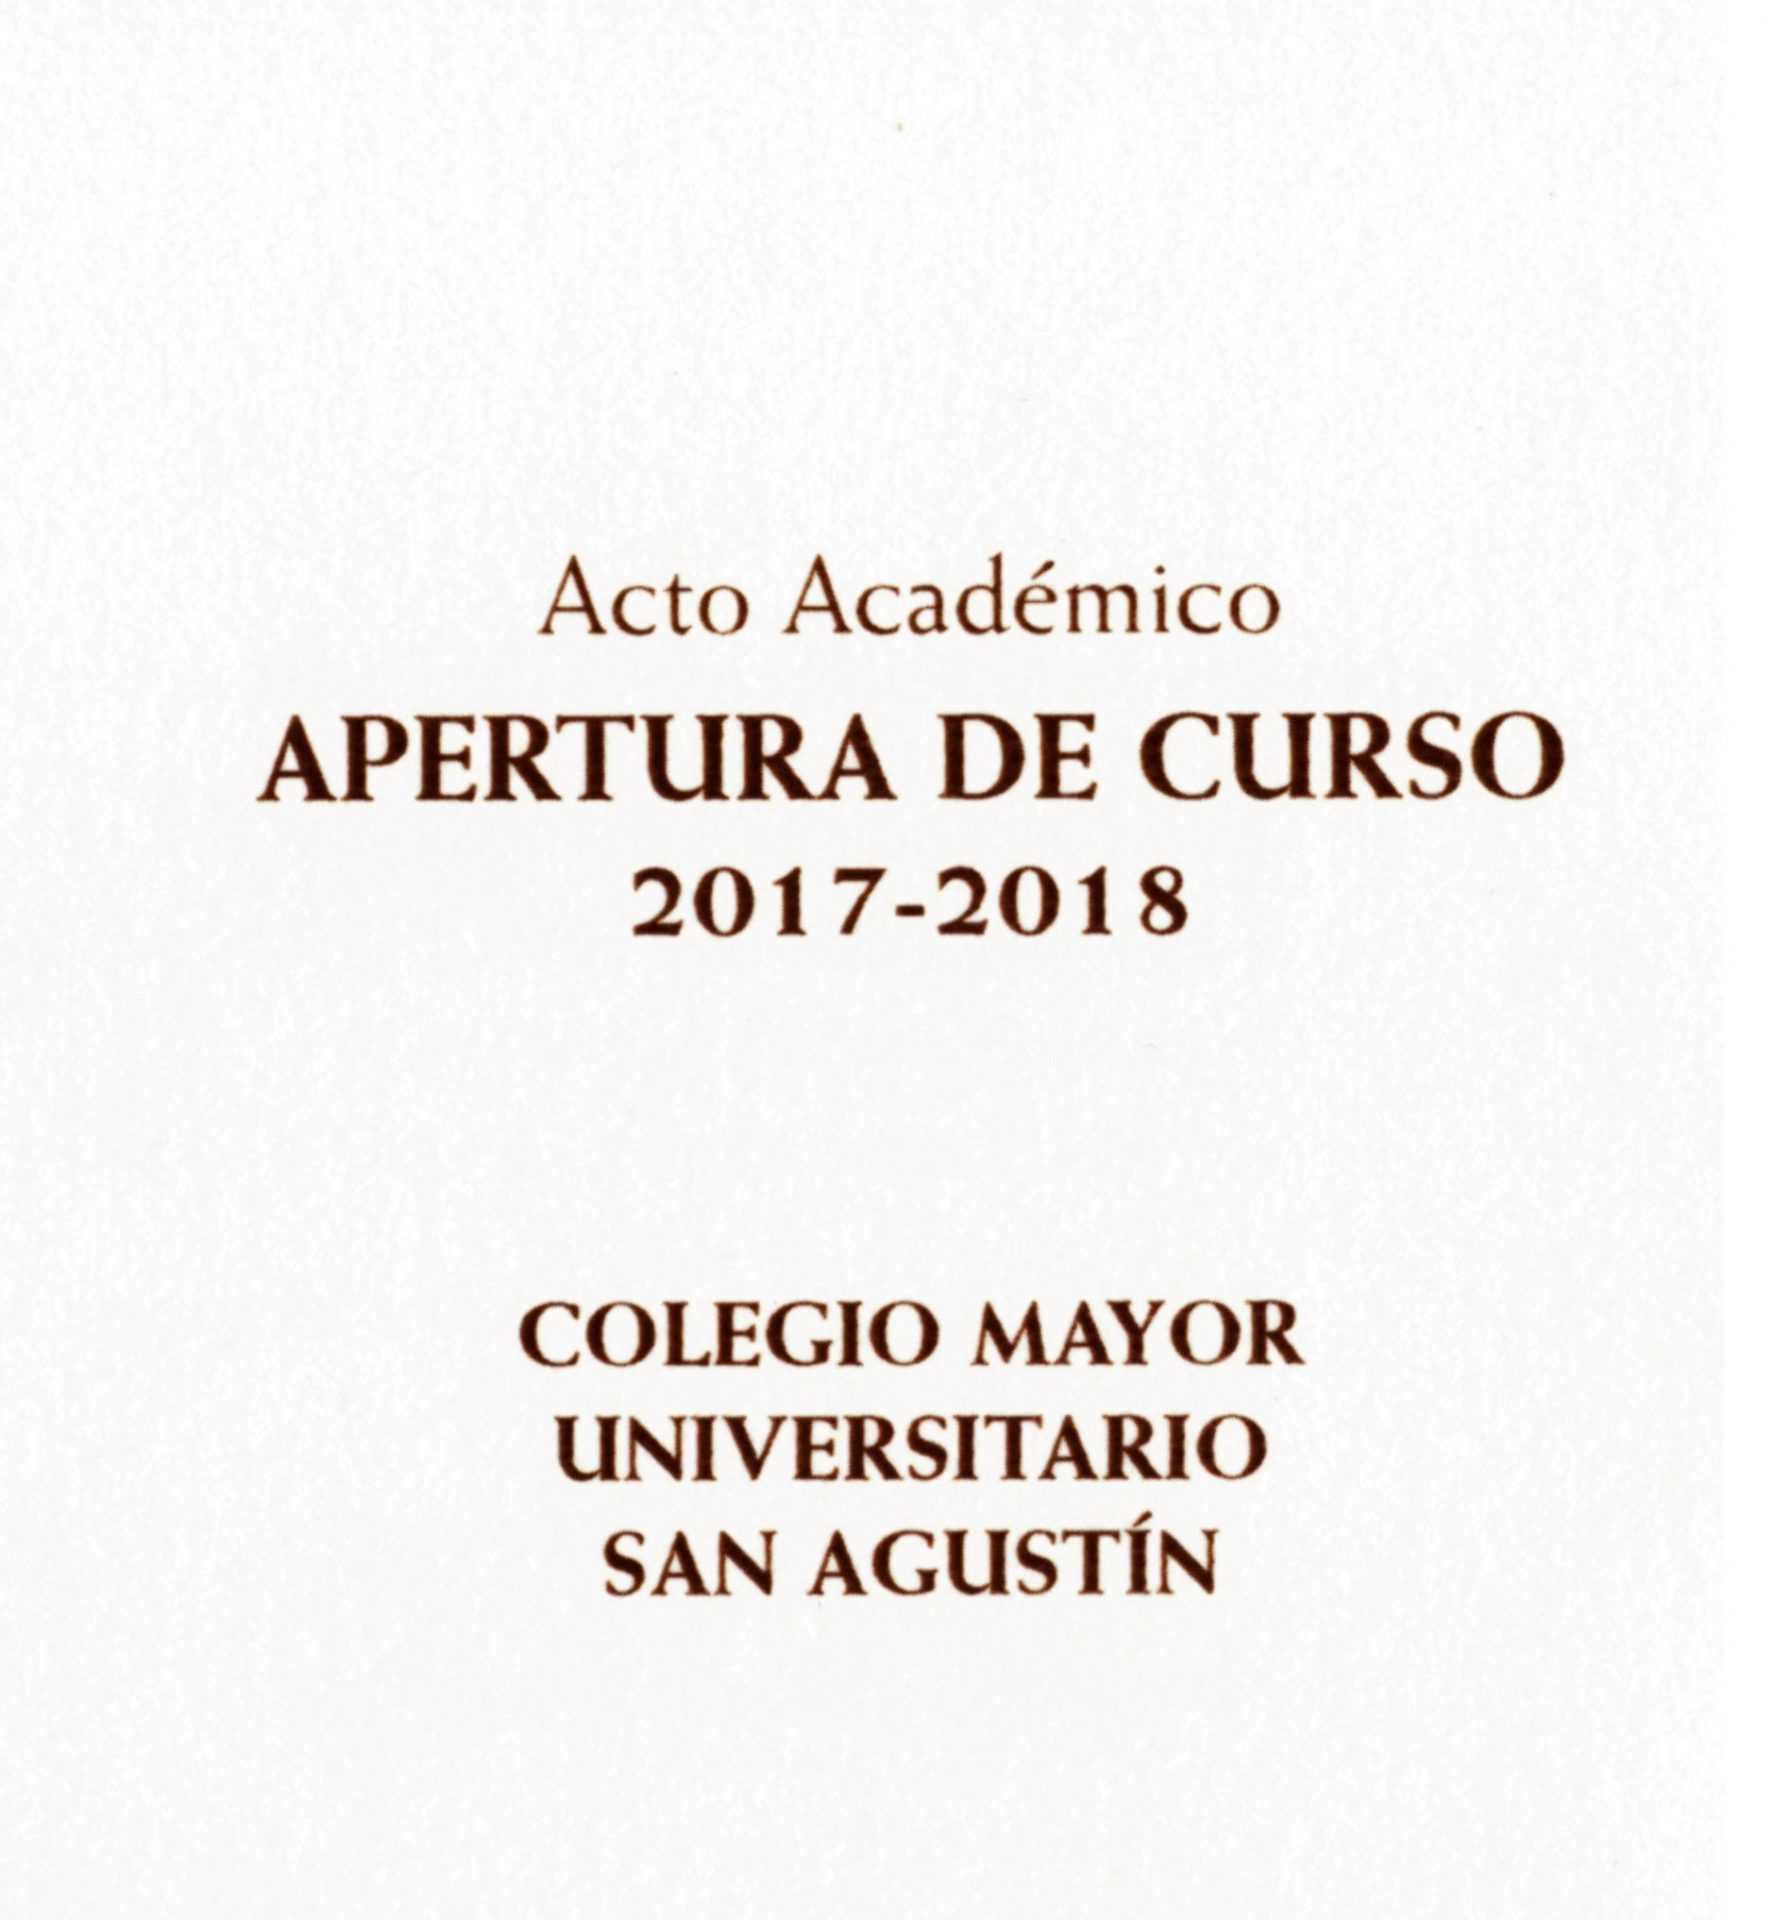 APERTURA CURSO 2017-2018